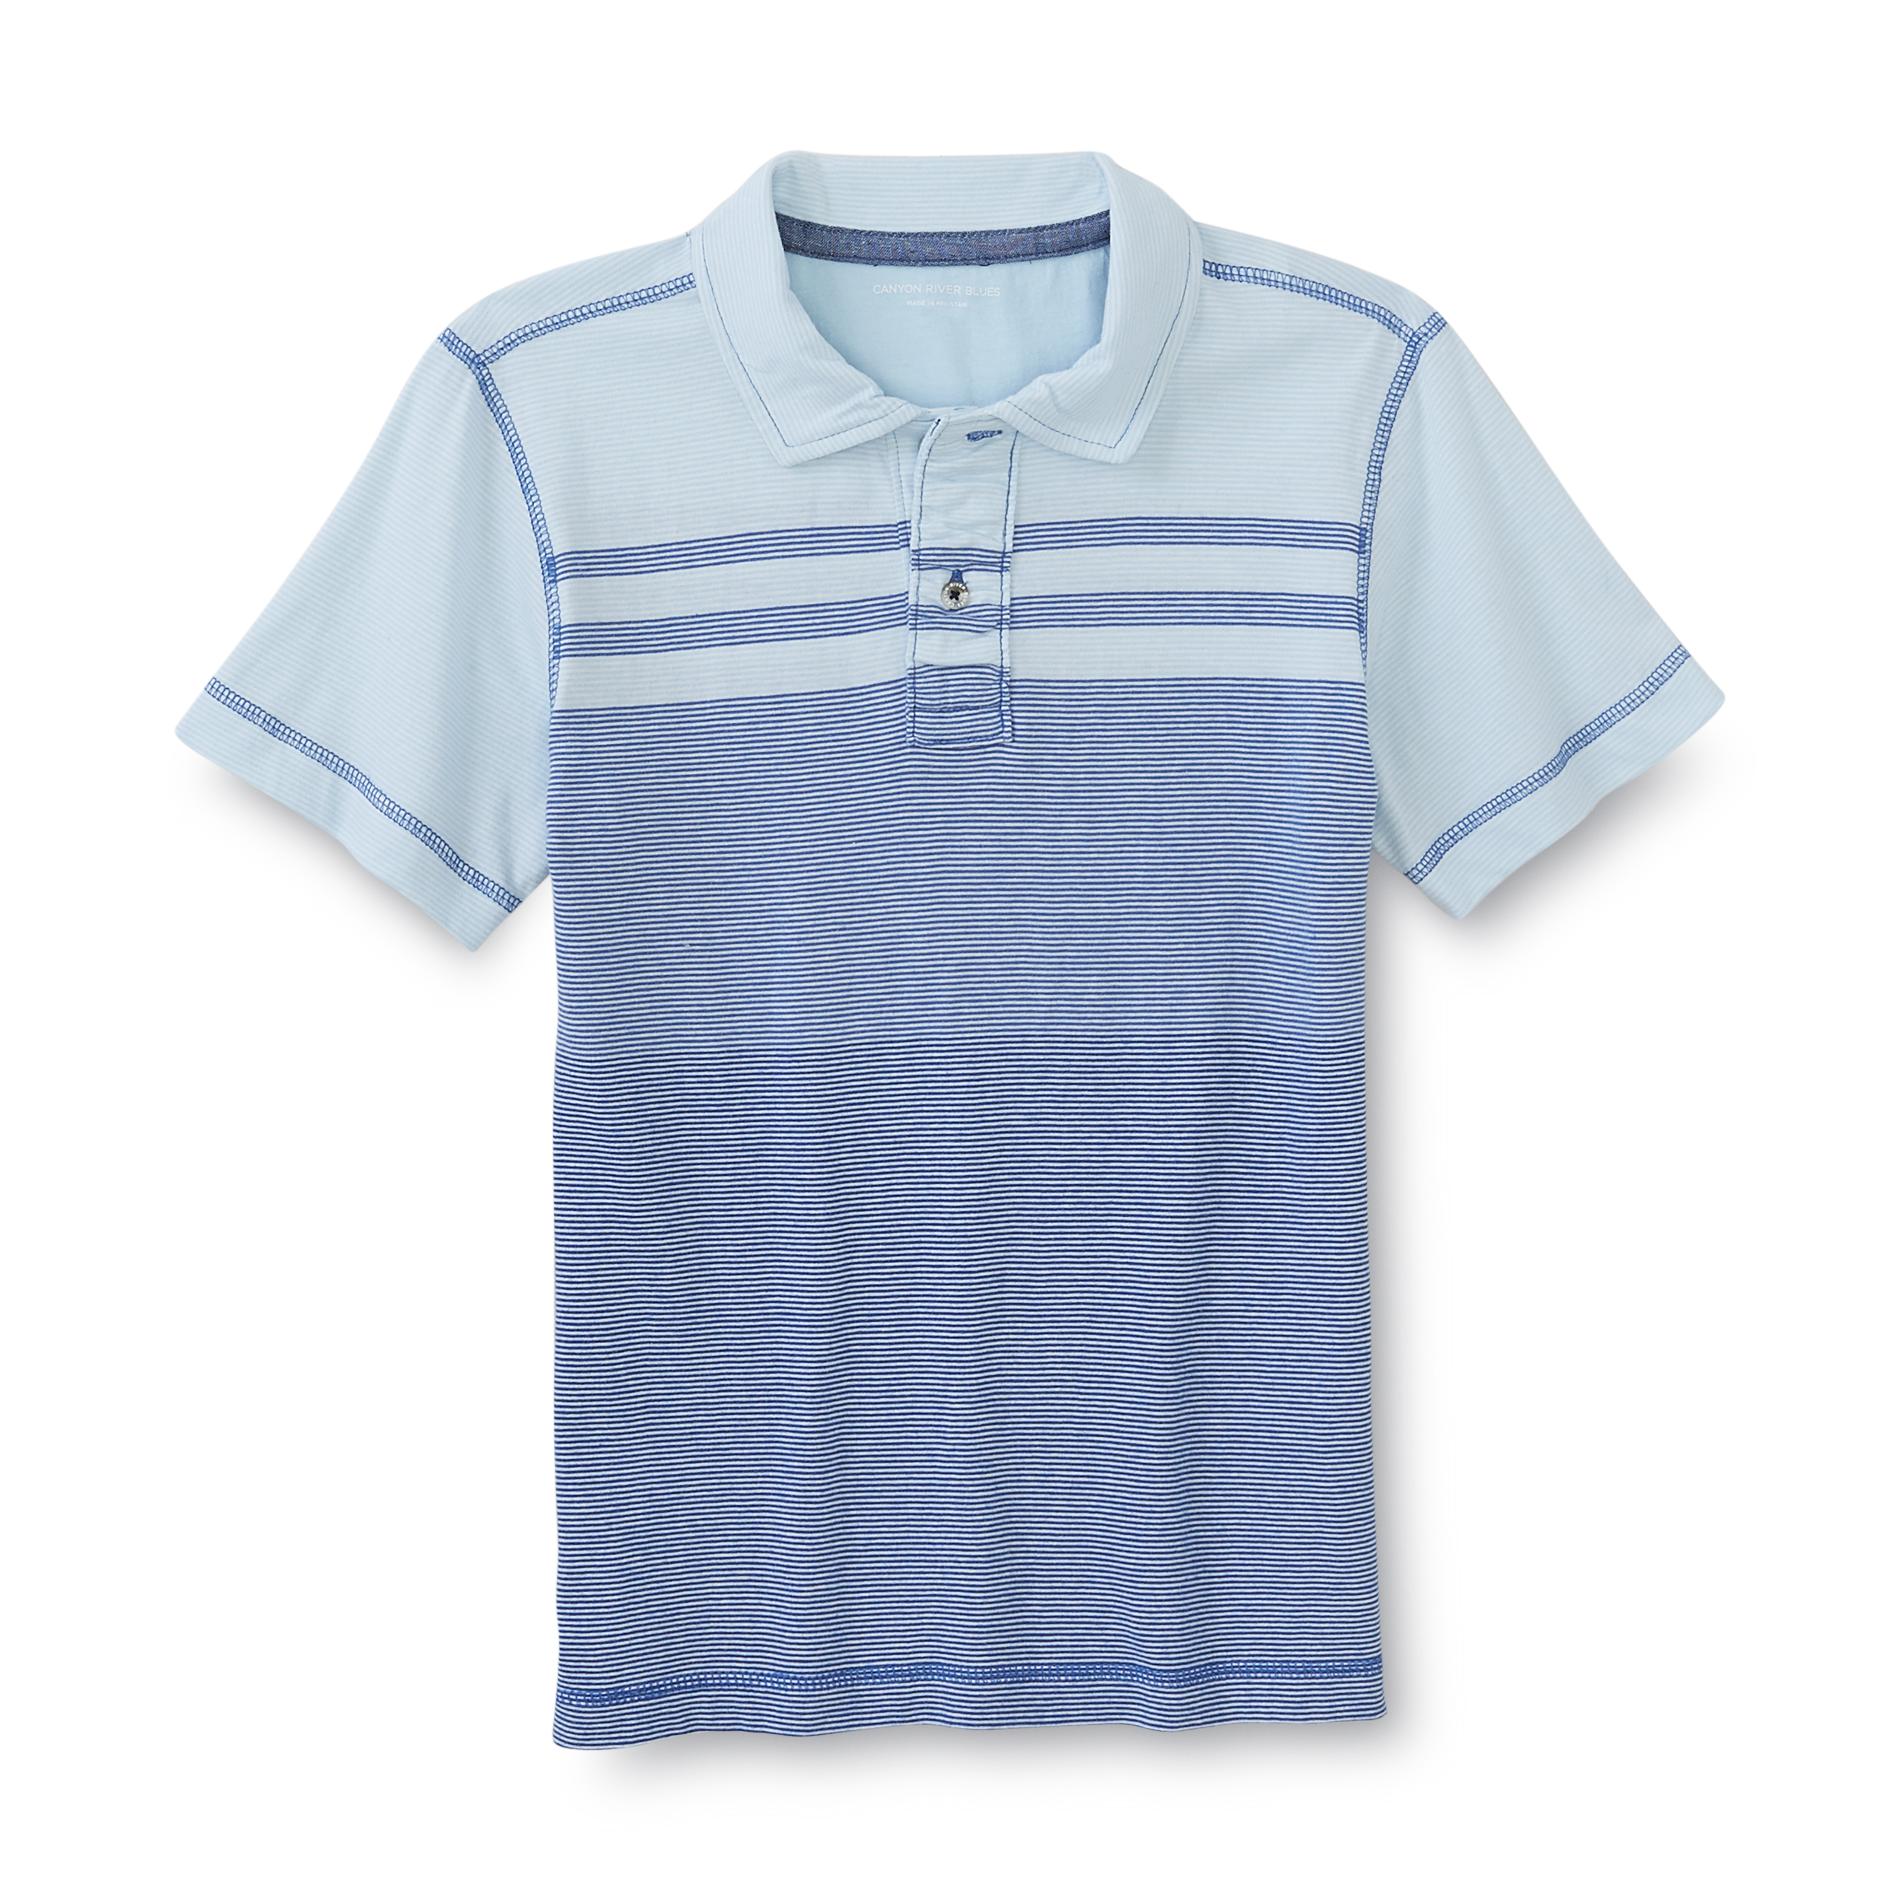 Boy's Polo Shirt - Striped